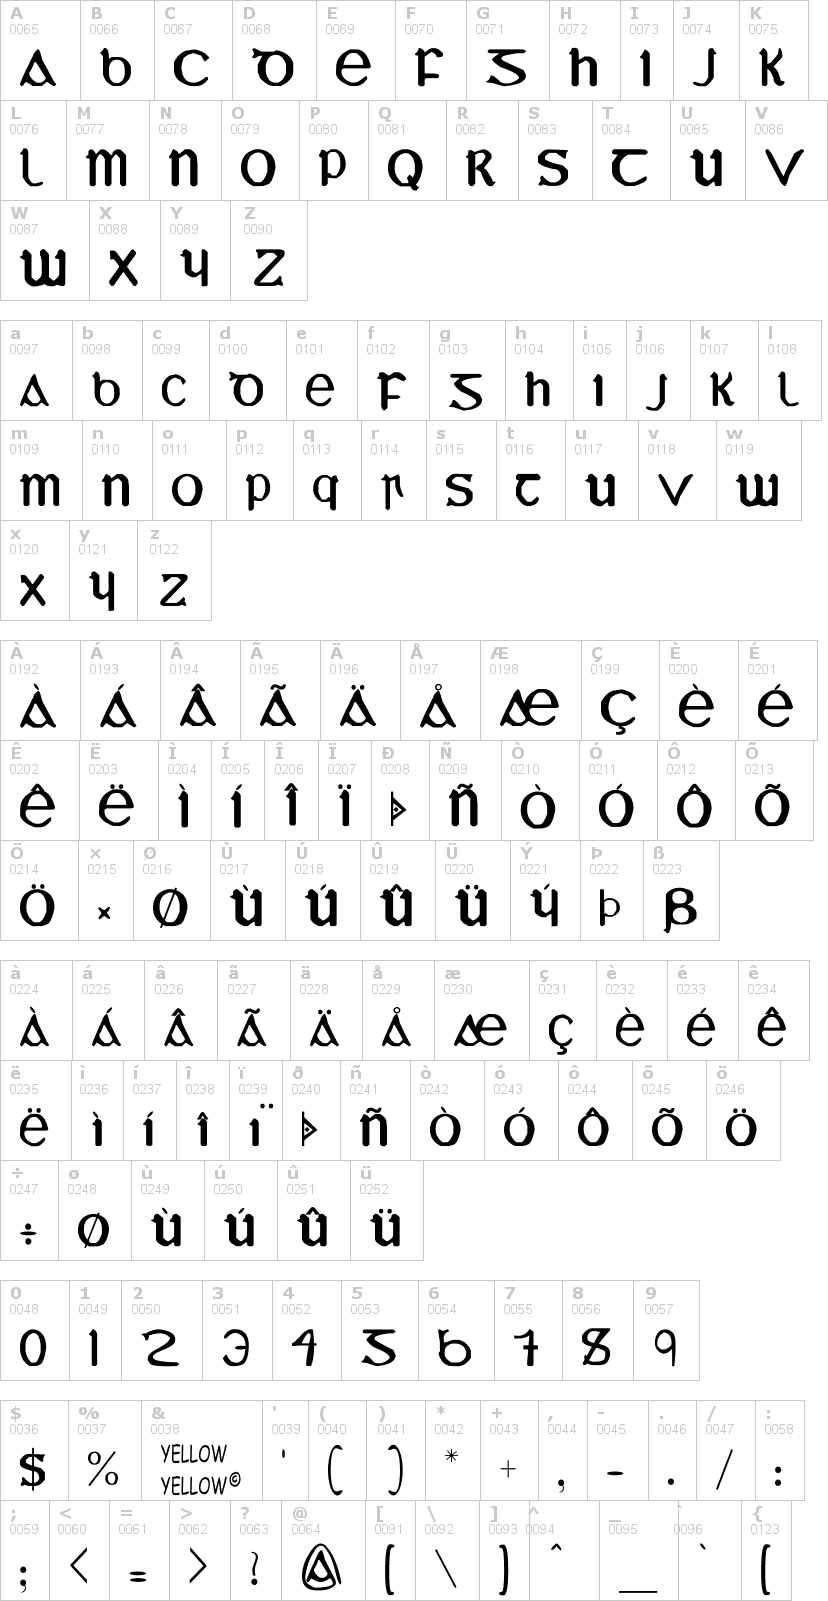 Lettere dell'alfabeto del font yy-uncial-most-iris con le quali è possibile realizzare adesivi prespaziati